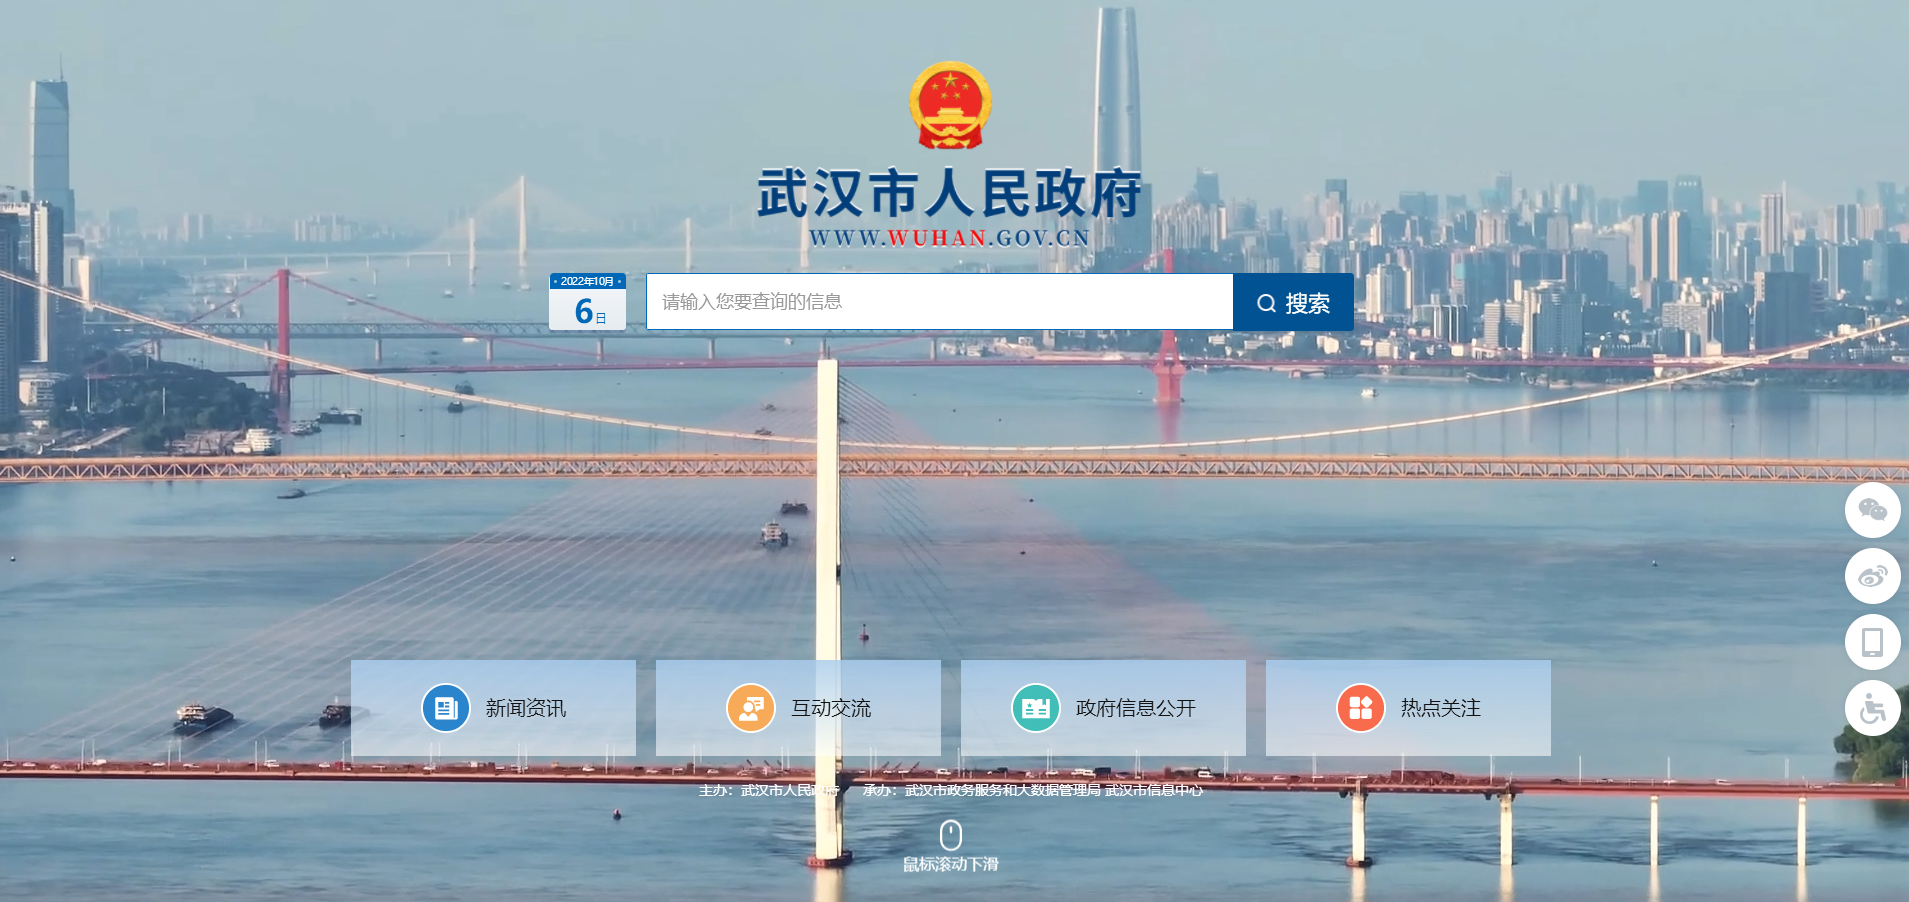 武汉市人民政府门户网站上新了